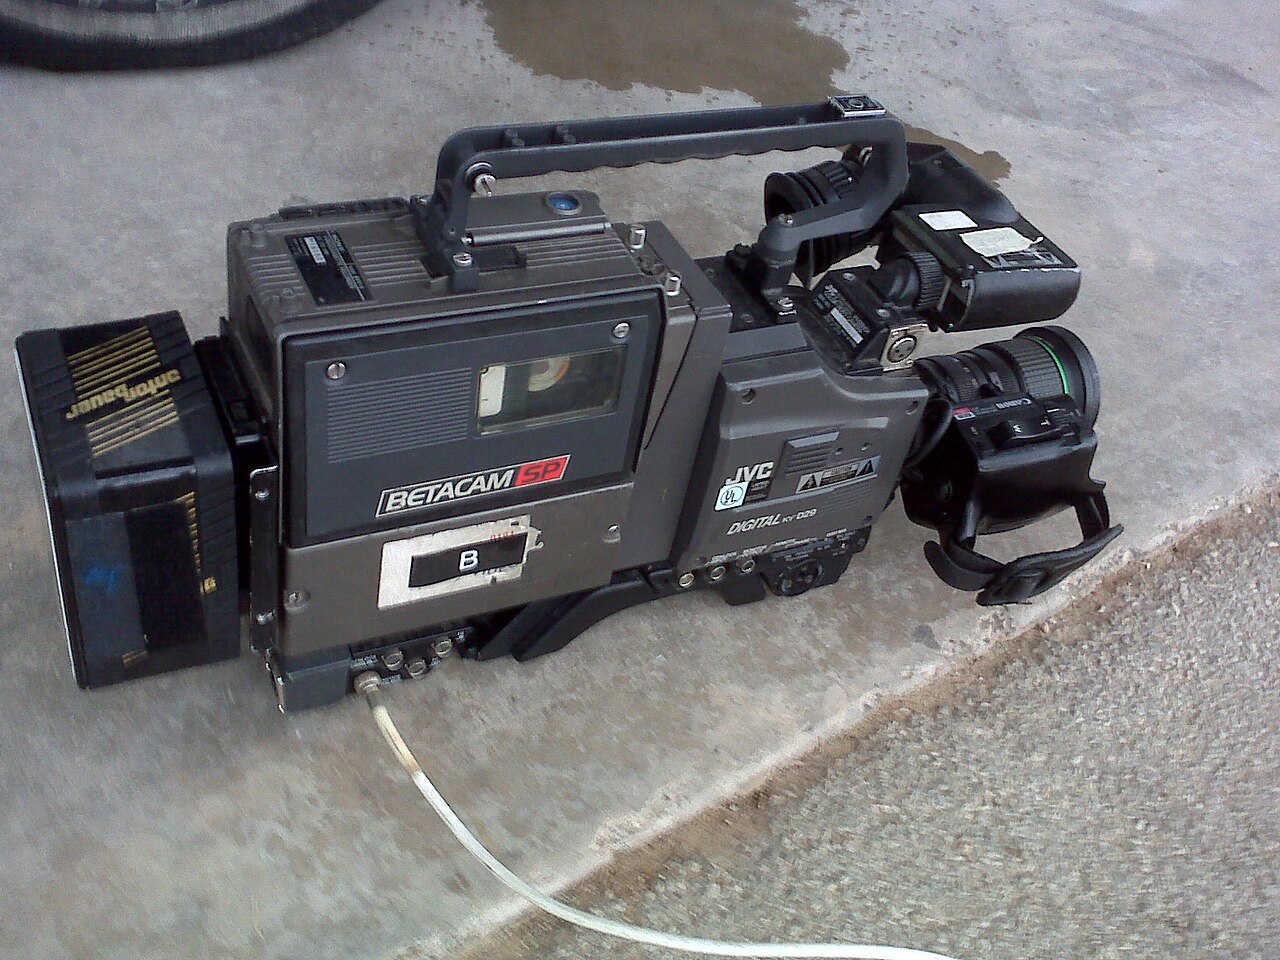 jvc 700x digital video camera manual